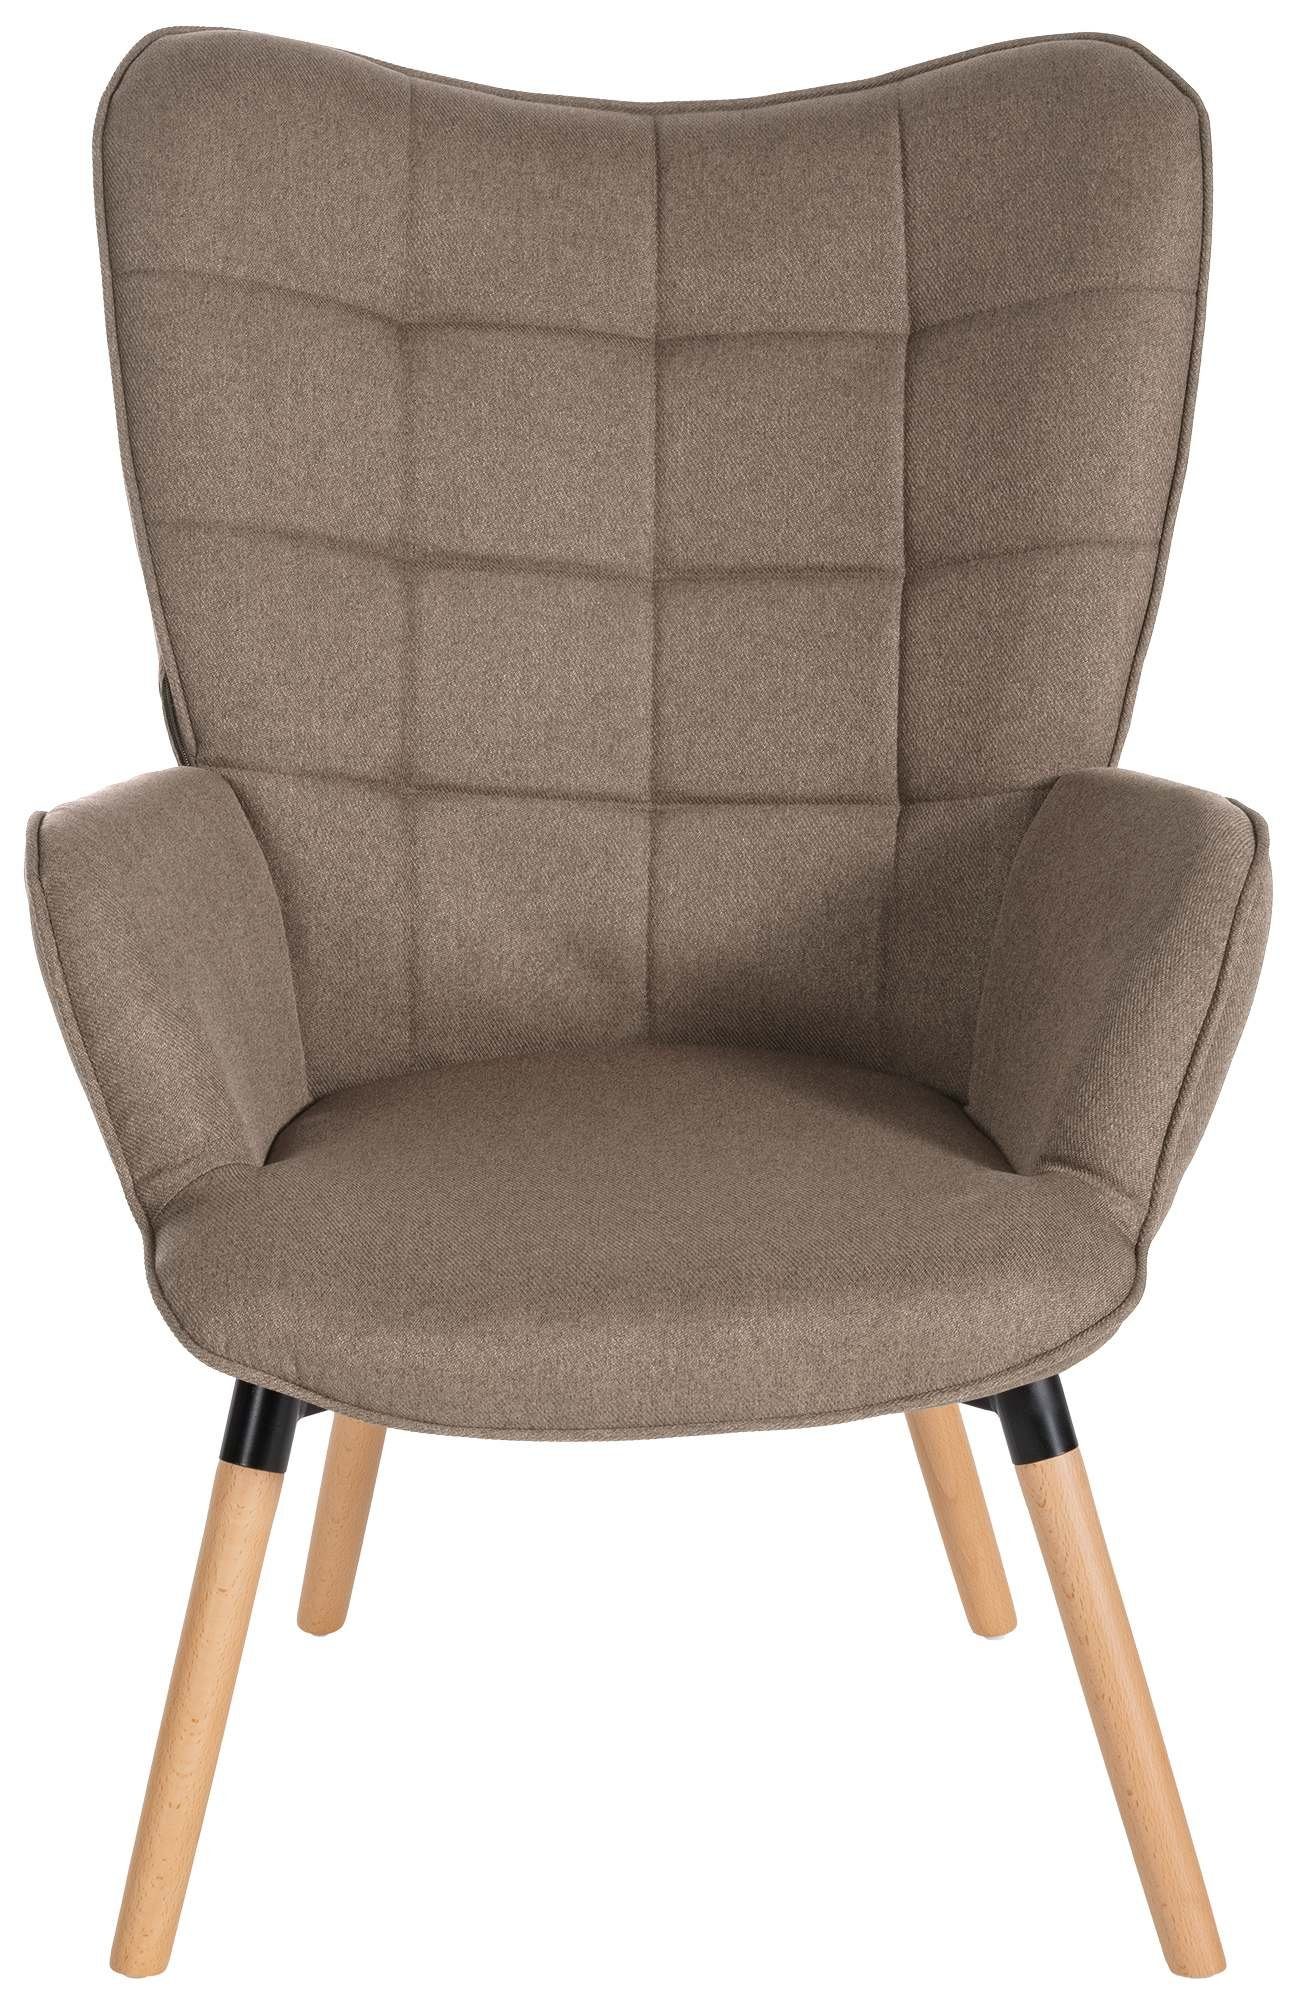 Buchenholz aus CLP Garding, mit Gestell Stuhl Loungesessel Stoff-Bezug taupe und